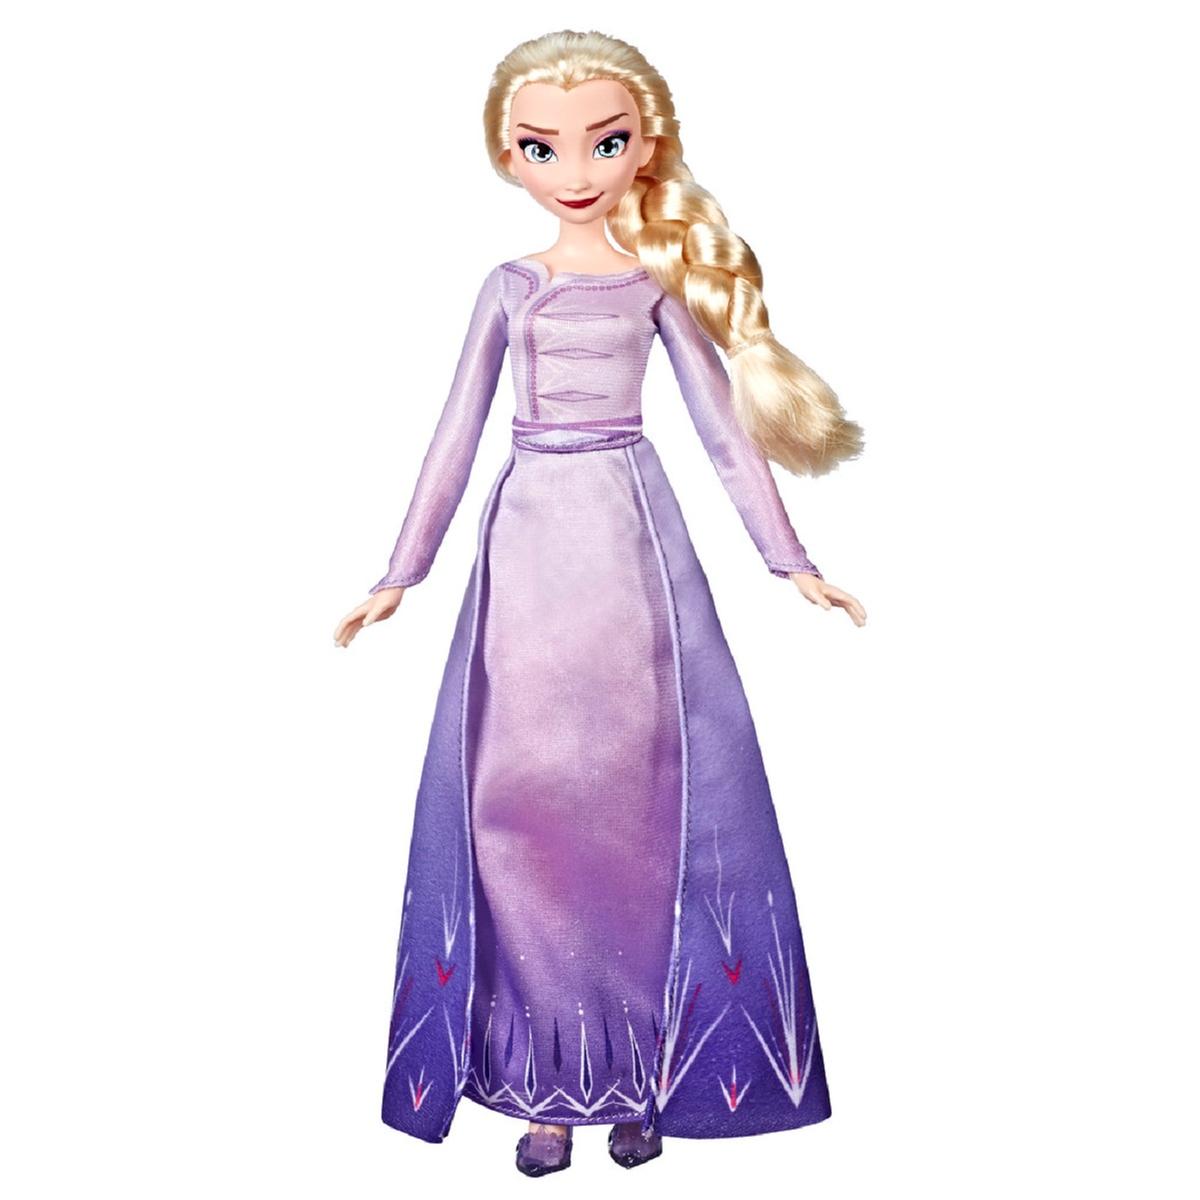 Correo Simplificar Ver a través de Frozen - Muñeca Elsa Frozen 2 | Dp Frozen | Toys"R"Us España